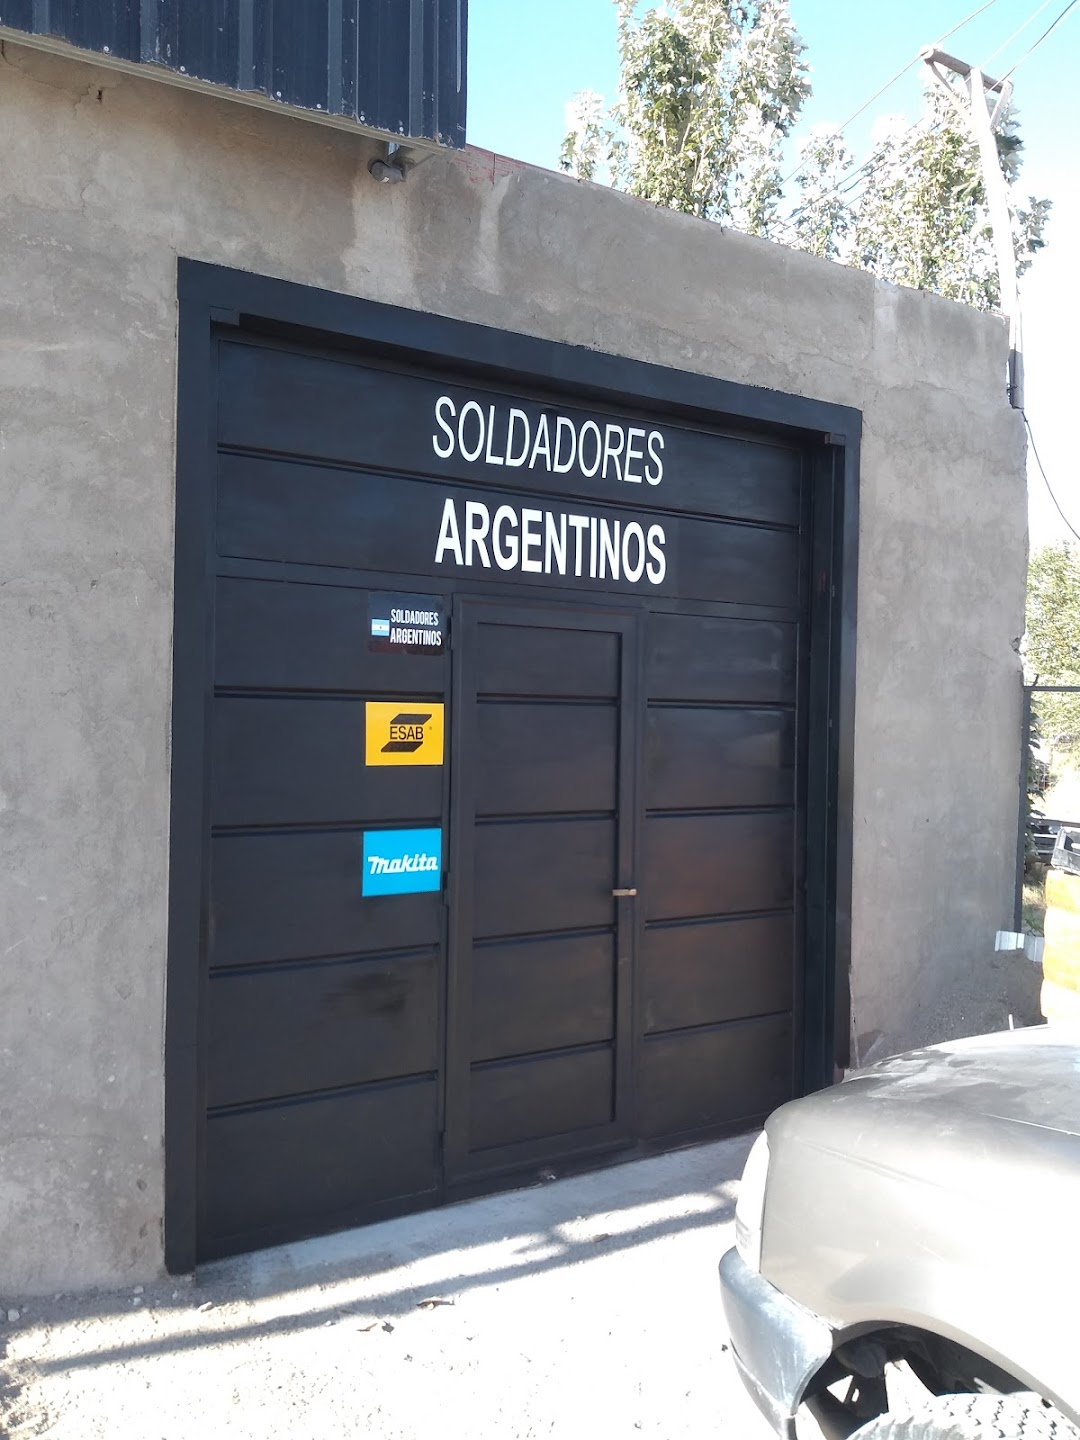 Soldadores Argentinos